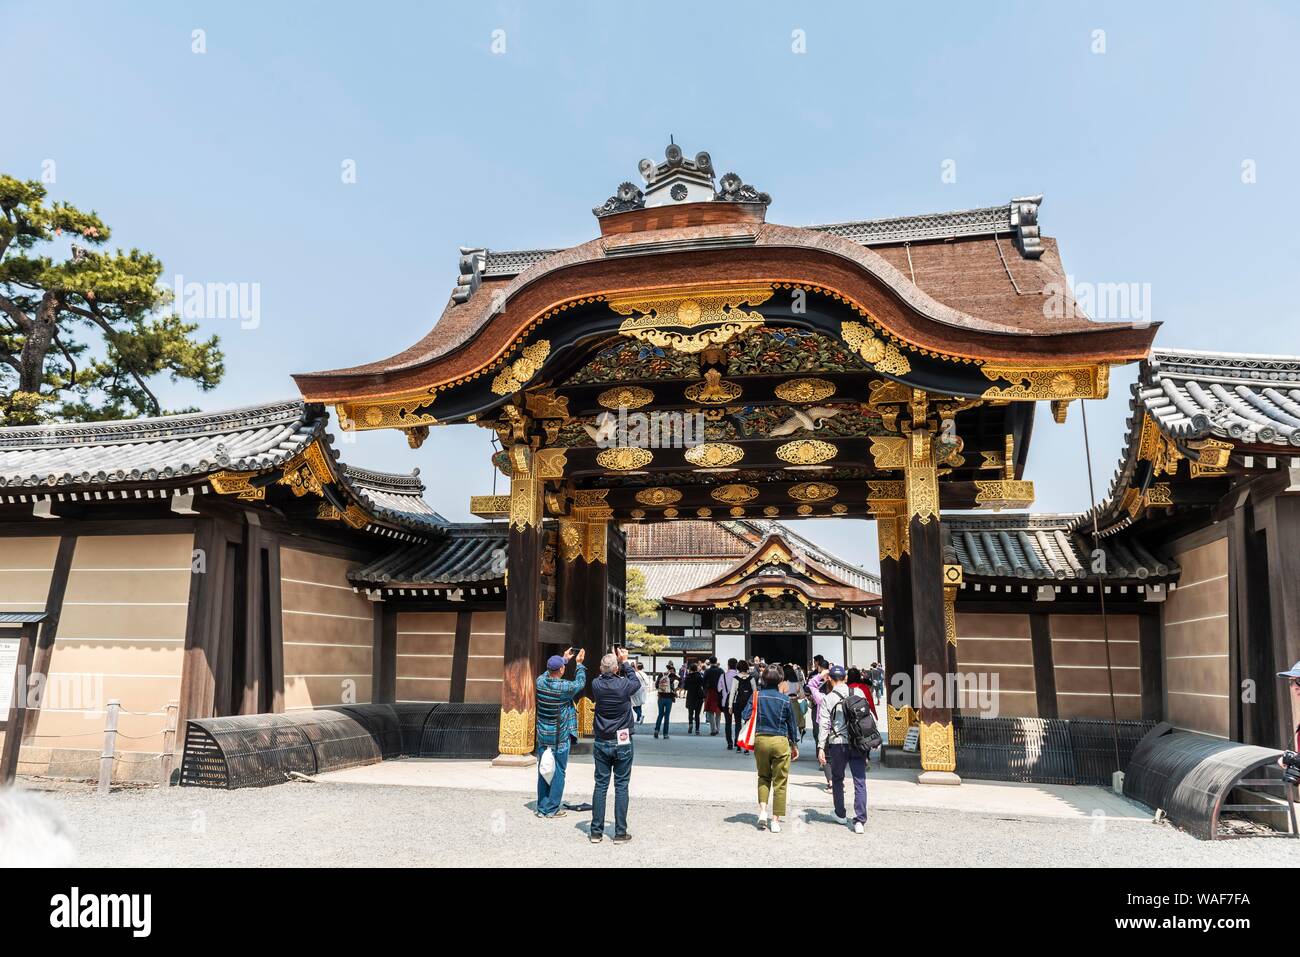 Ninomaru Gate, château de Nijo, ancien château du shogunat, Kyoto, Japon Banque D'Images